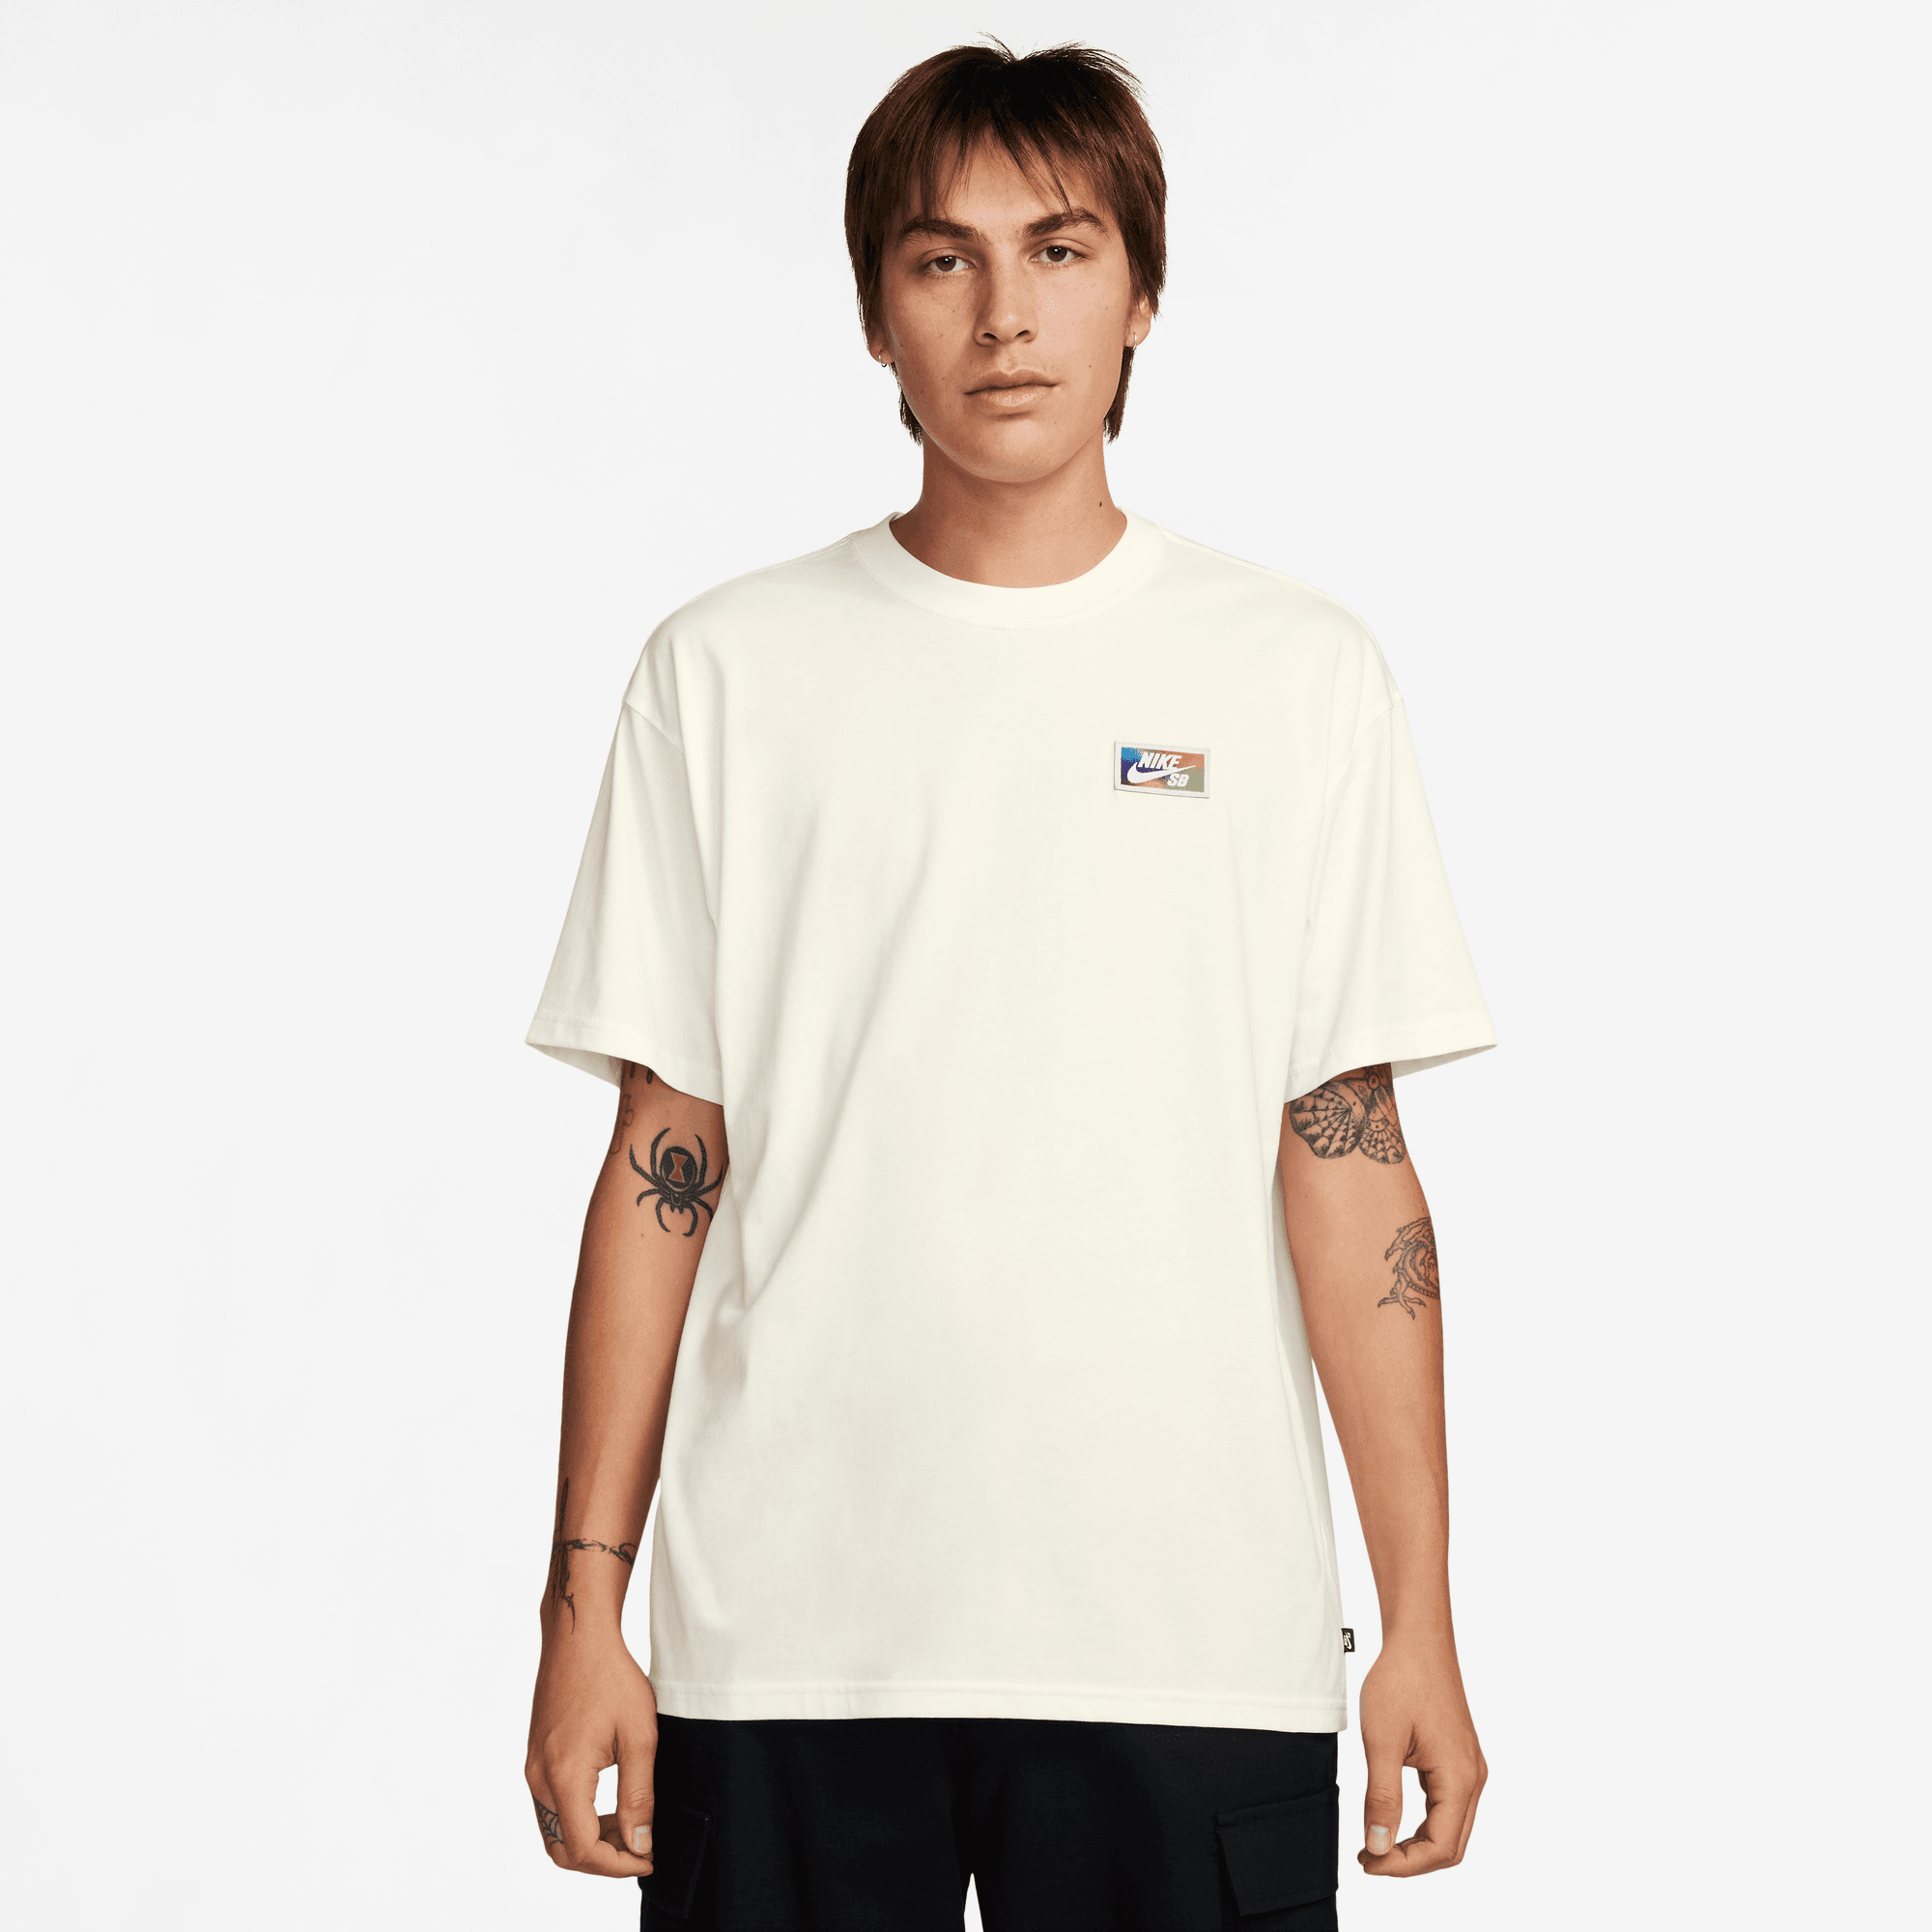 Sail Thumbprint Nike SB T-Shirt